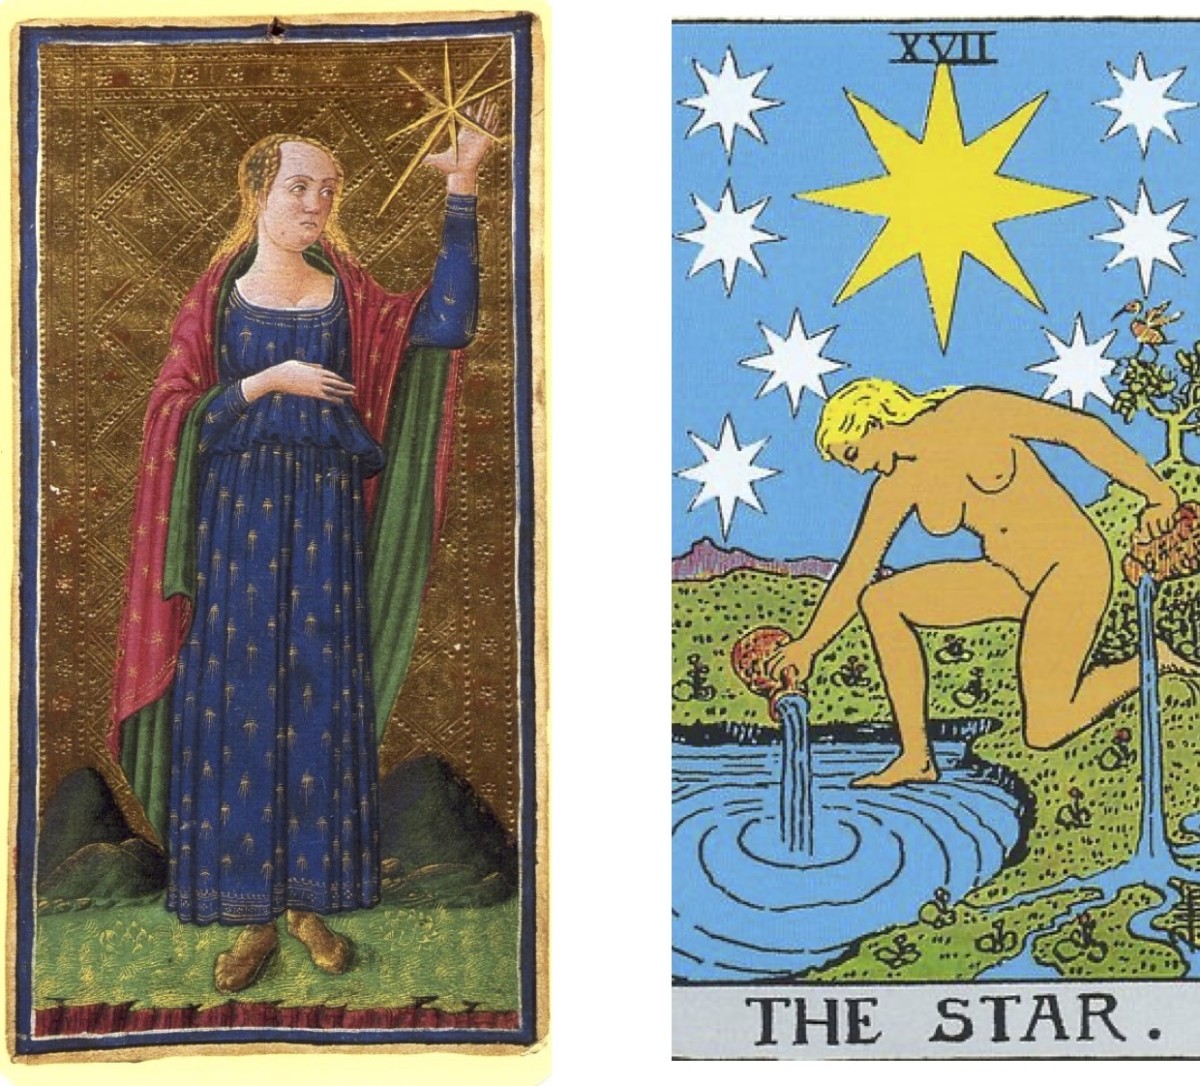 这张星牌意味着物质和精神上的成功;“平衡生活”的理想。是放在银盘子里吗?不。请注意，这两幅图像(15世纪和20世纪版本)的背景都有山脉，代表克服的挑战。